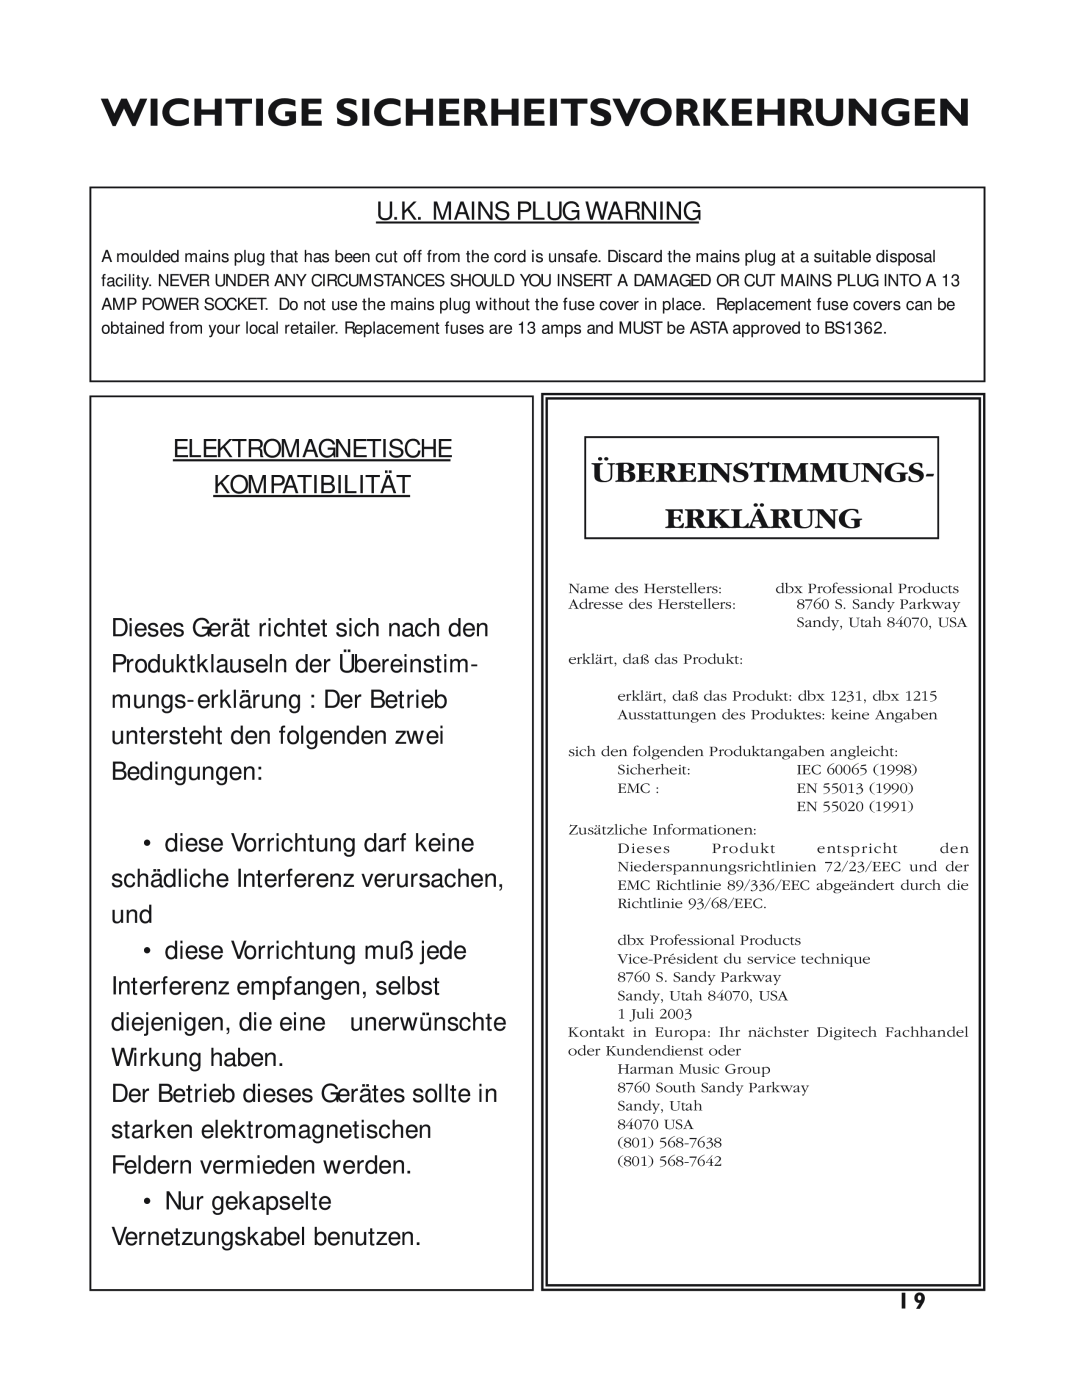 dbx Pro 12 Series operation manual Übereinstimmungs Erklärung, Wichtige Sicherheitsvorkehrungen, U.K. Mains Plug Warning 